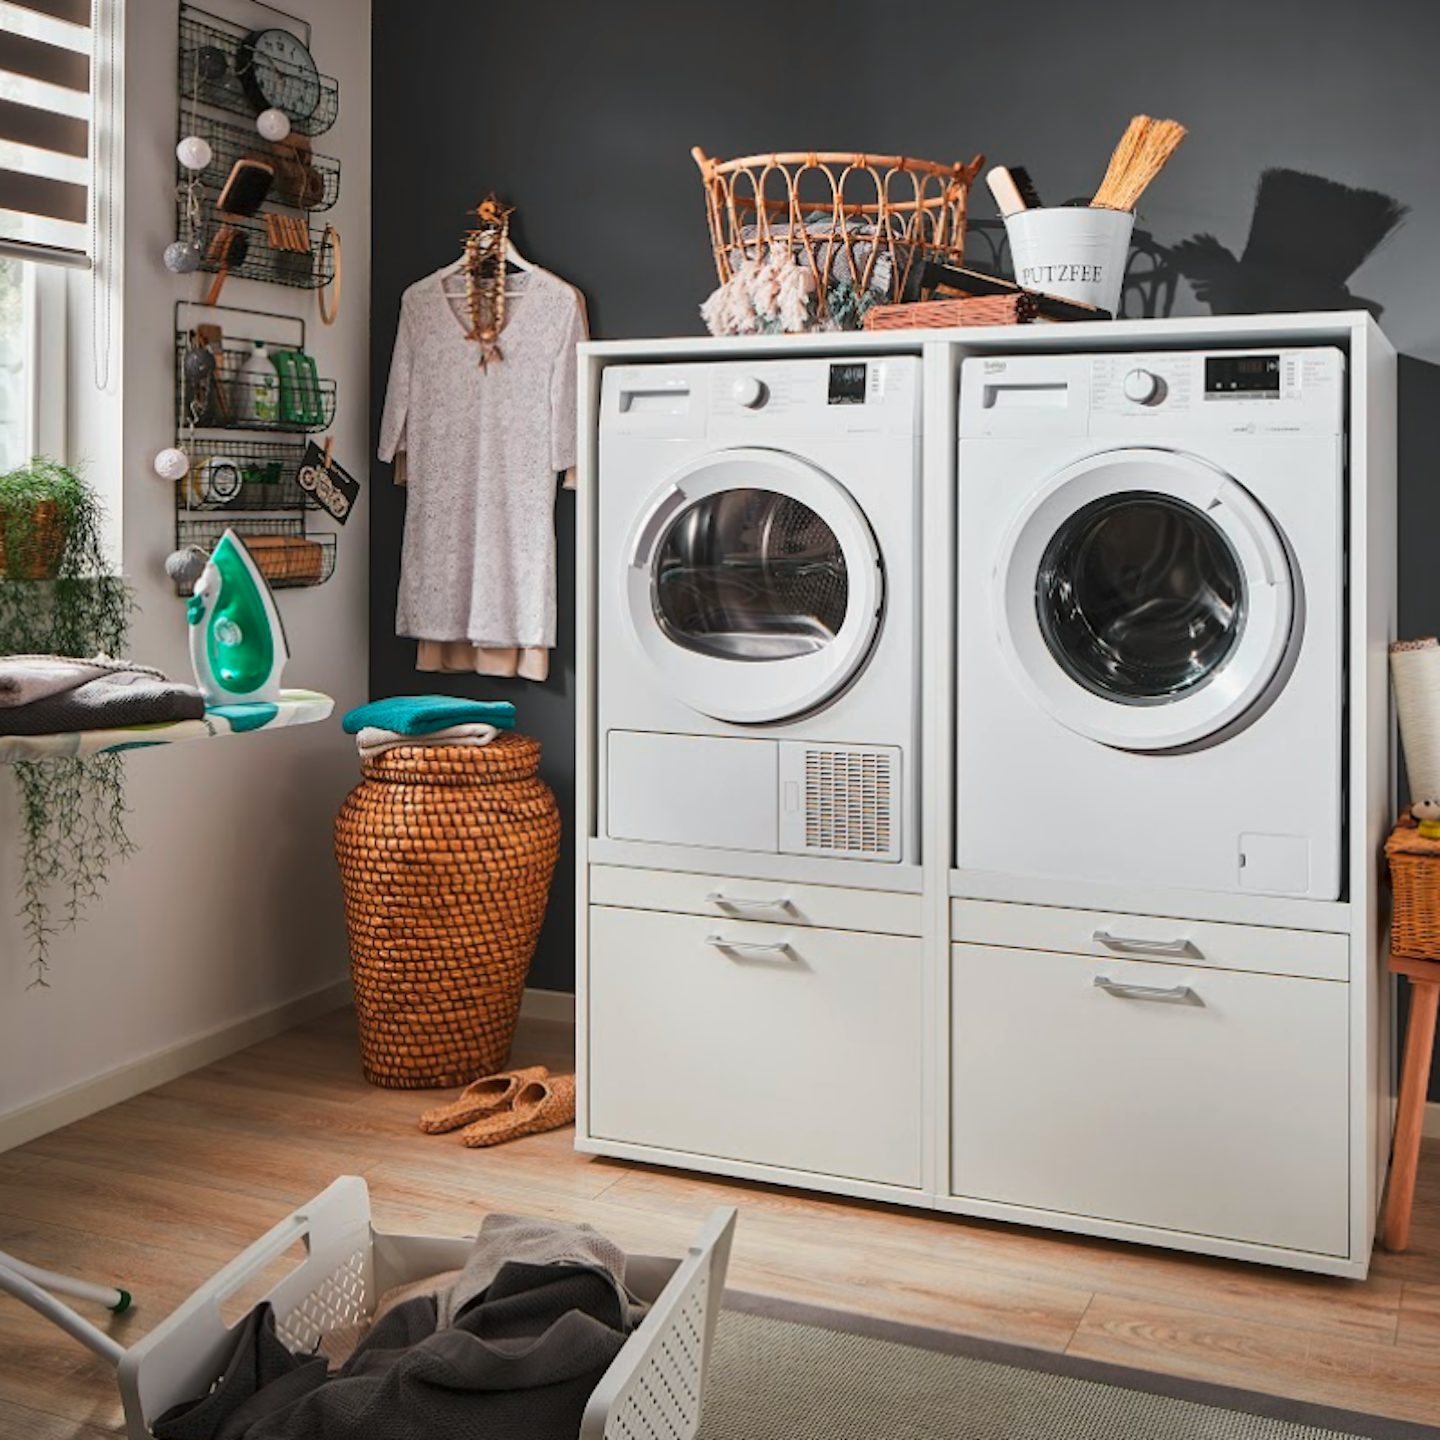 De ideale hoogte voor je wasmachine of droger is 60 cm. Bij wastoren zijn de kasten speciaal ontworpen als verhoging van je witgoed